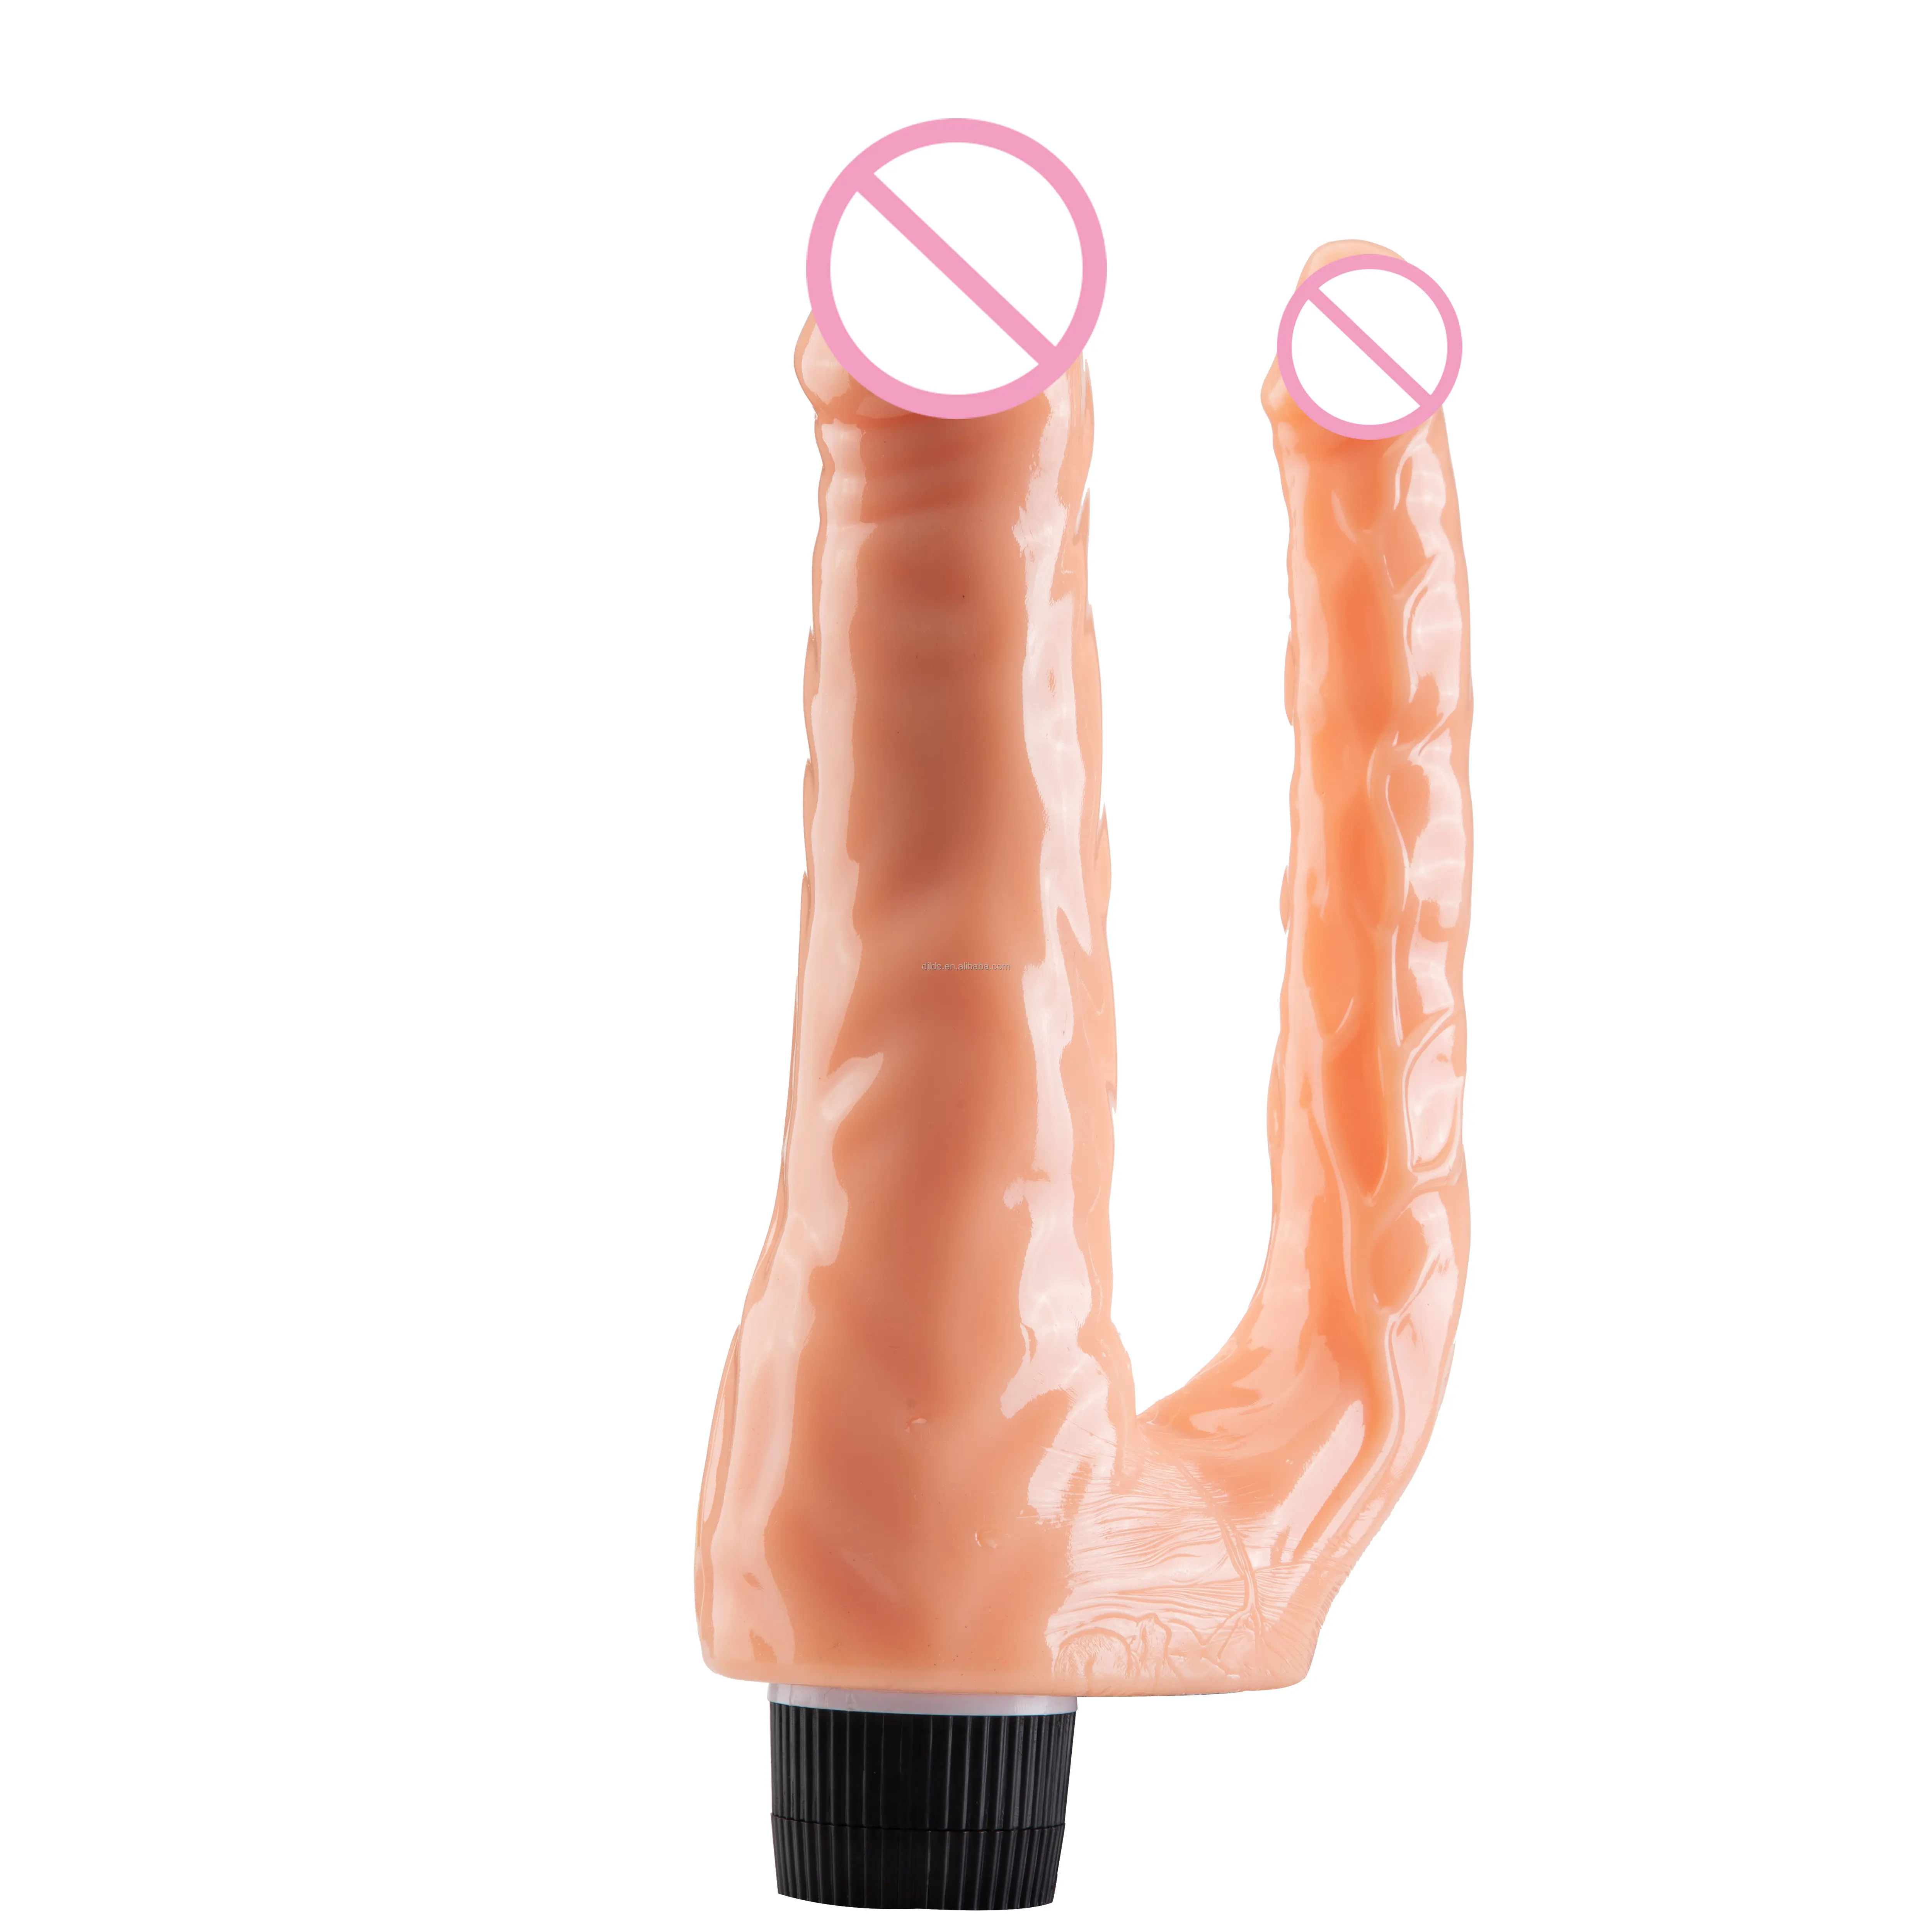 Dubbele Hoofden Penis Dildo 'S En Vibrators Sex Toys Vrouwen Vibrator Dildo Wands